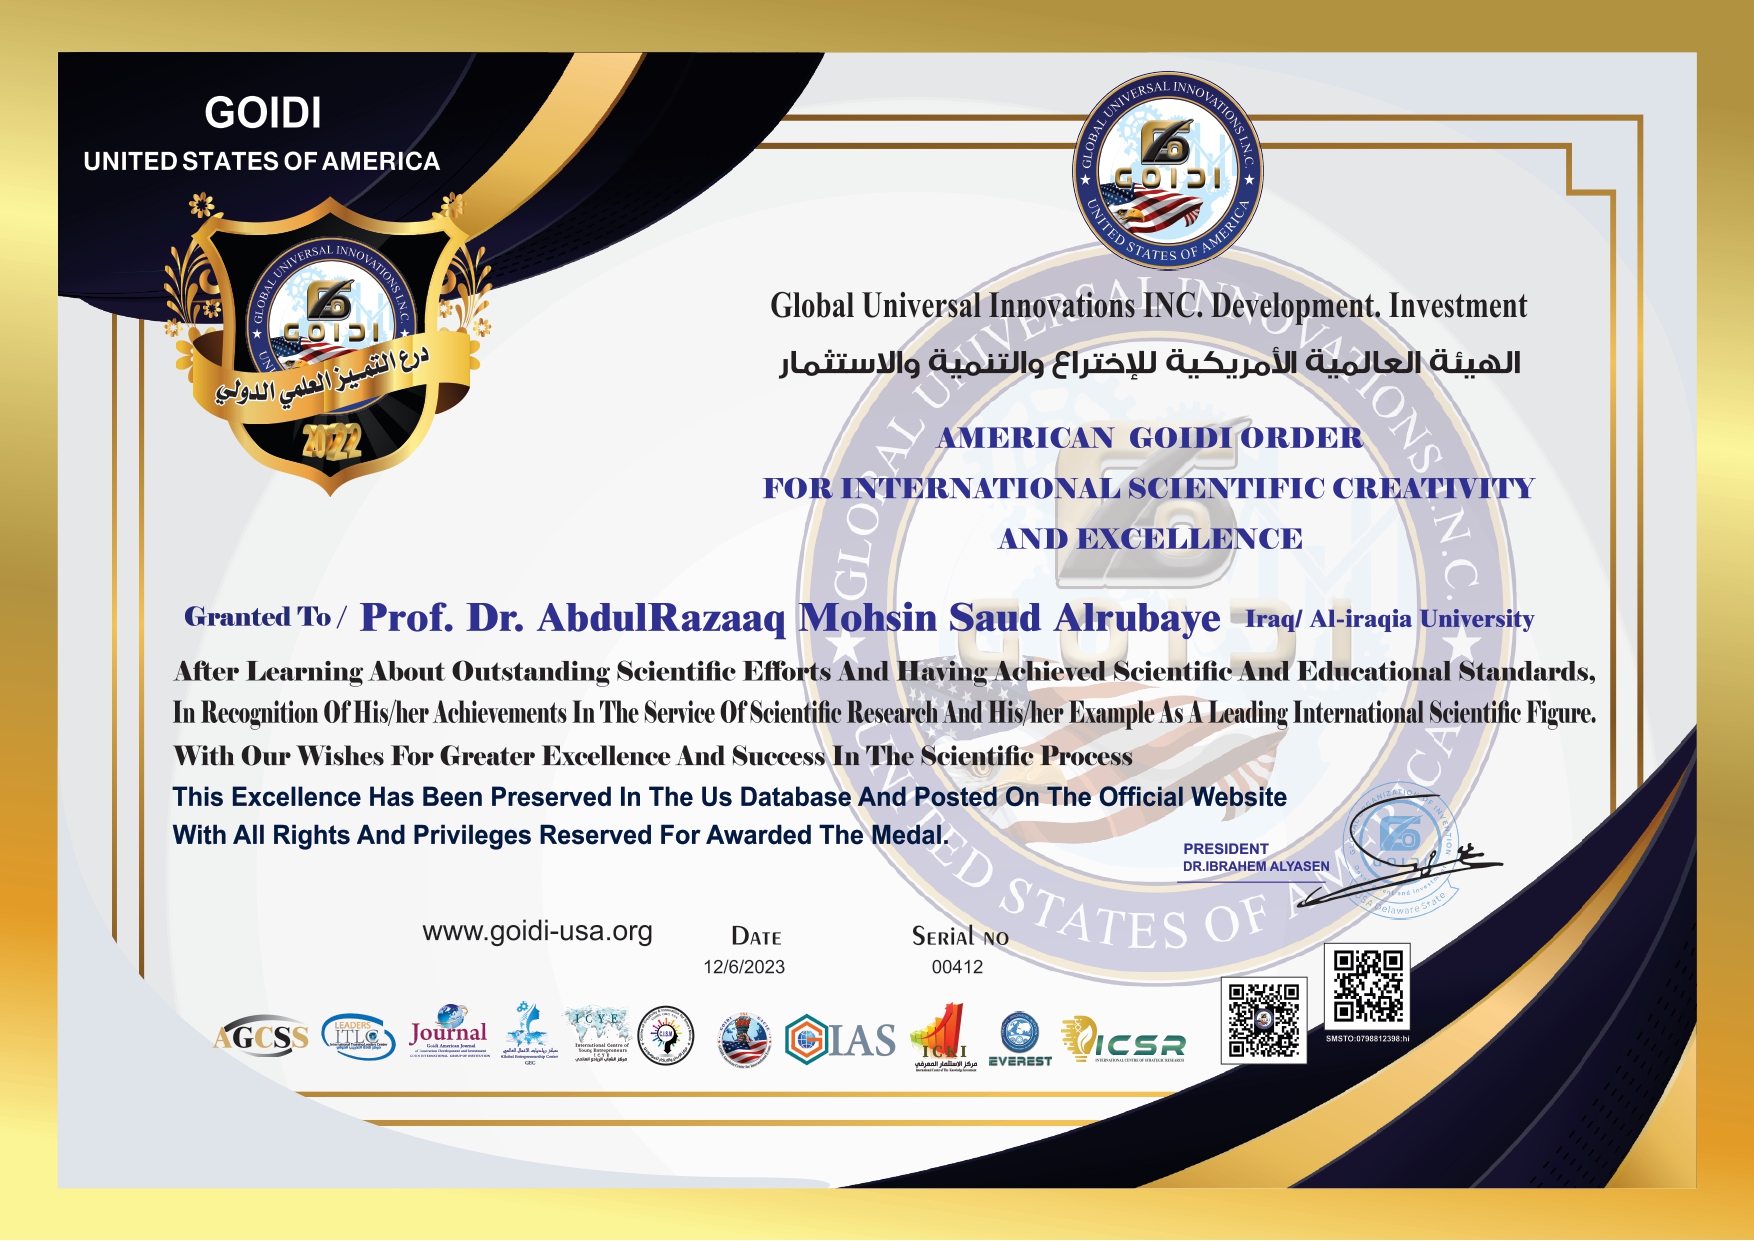 
قدمت إدارة الهيئة العالمية الامريكية للاختراع والتنمية والإستثمار
شهادة درع التميز العلمي الدولي 
الى الدكتور عبد الرزاق محسن من العراق 
